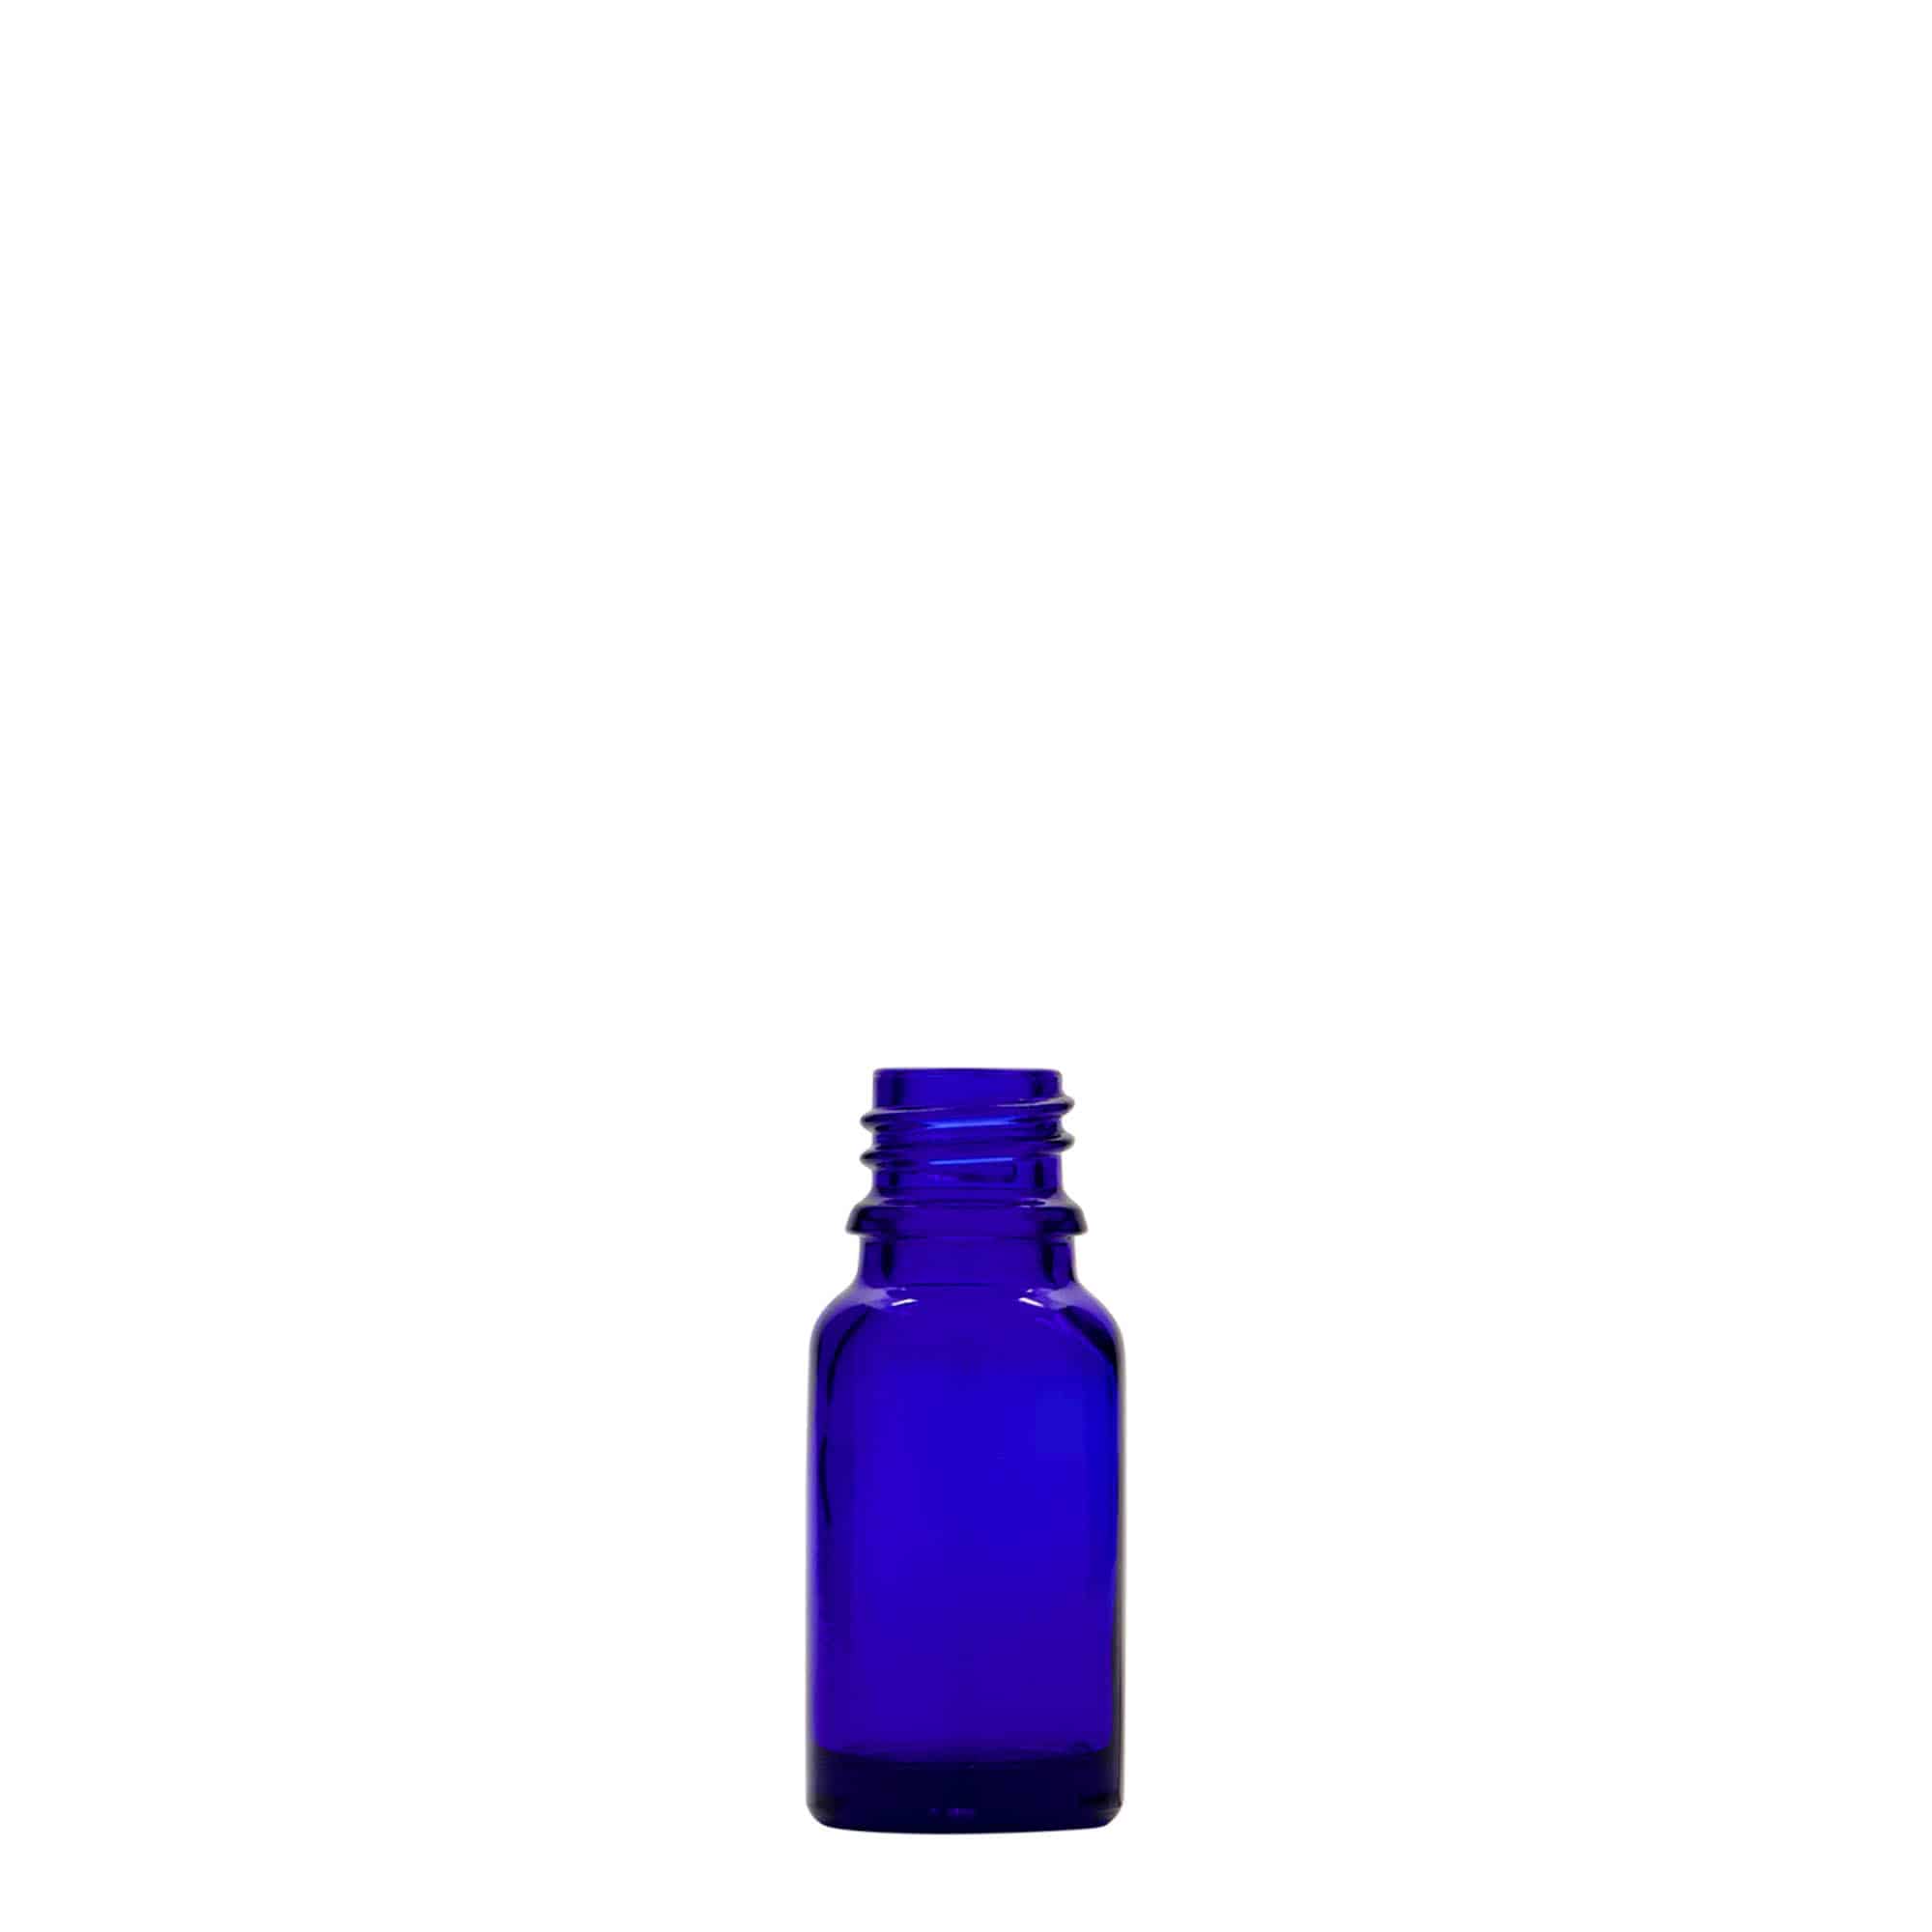 Lékovka 10 ml, sklo, královská modř, ústí: DIN 18